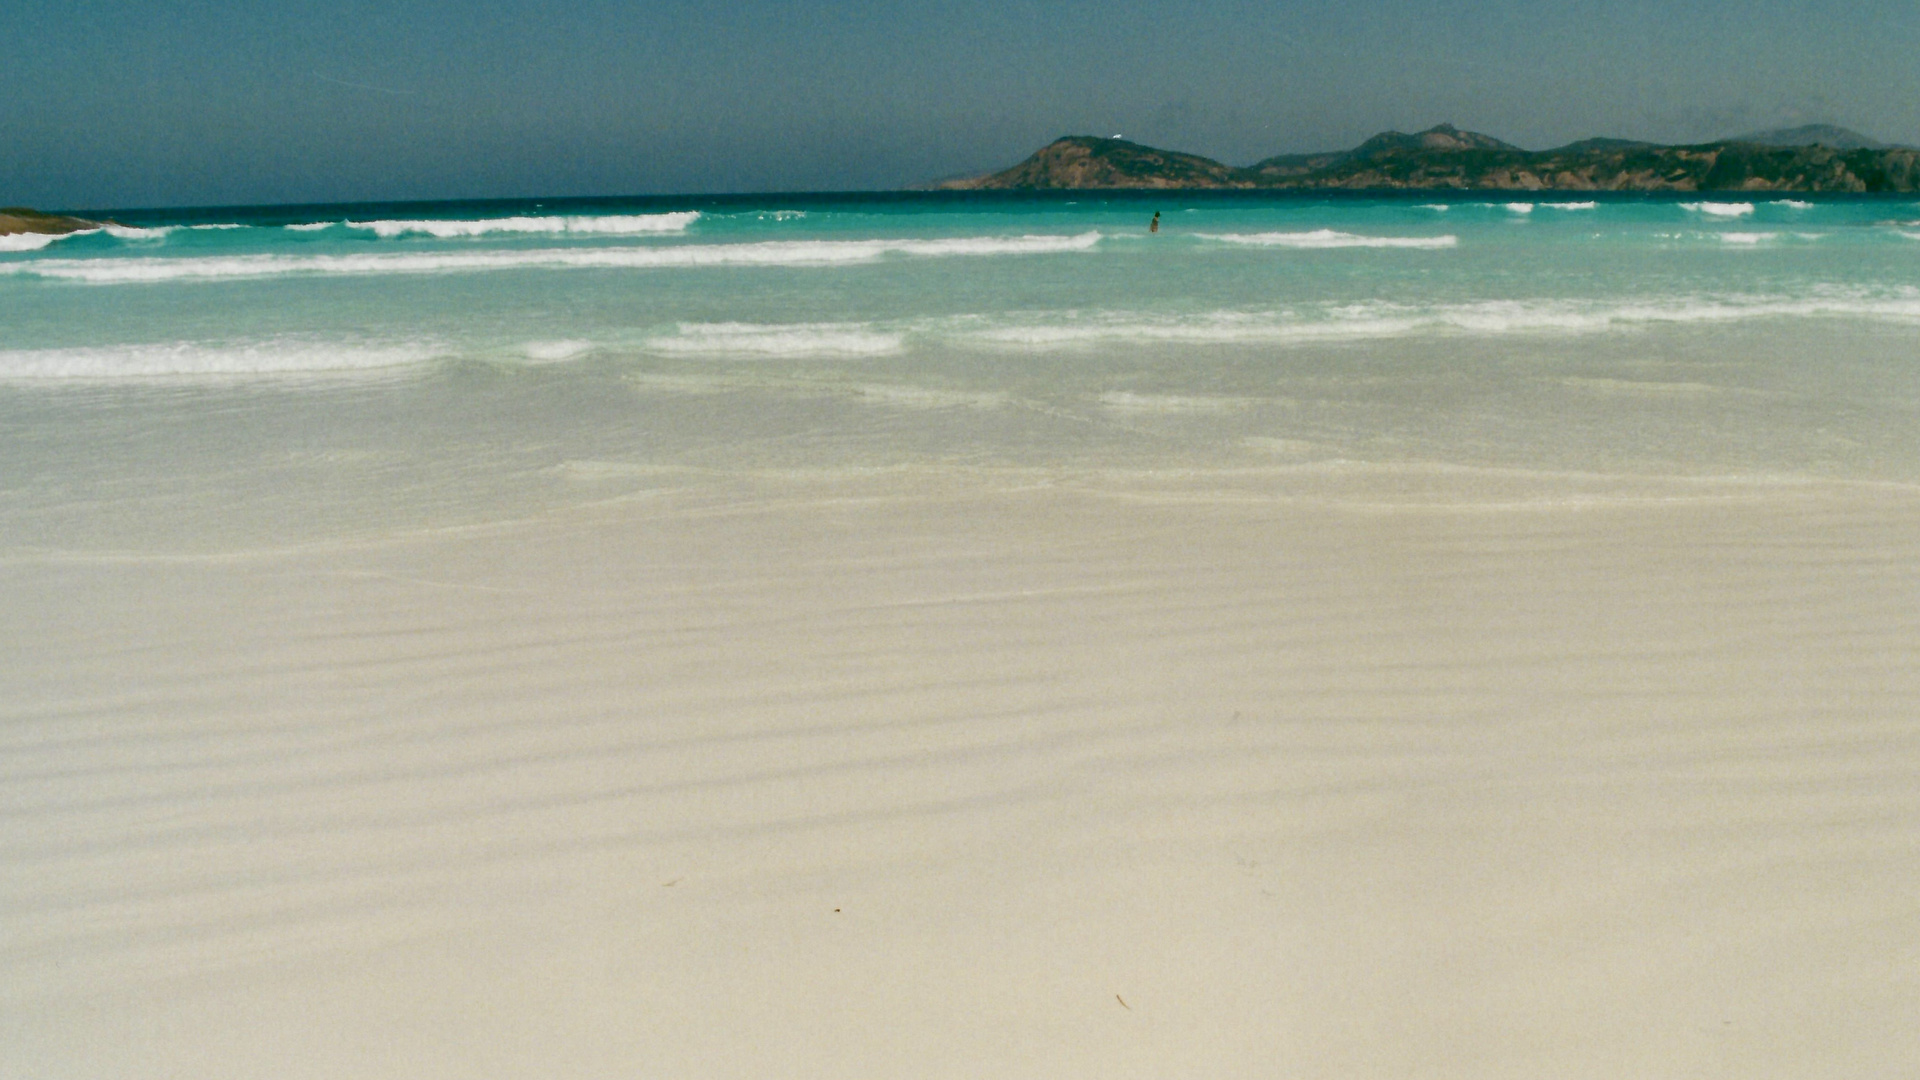 Australien (2001), Cape Le Grand NP